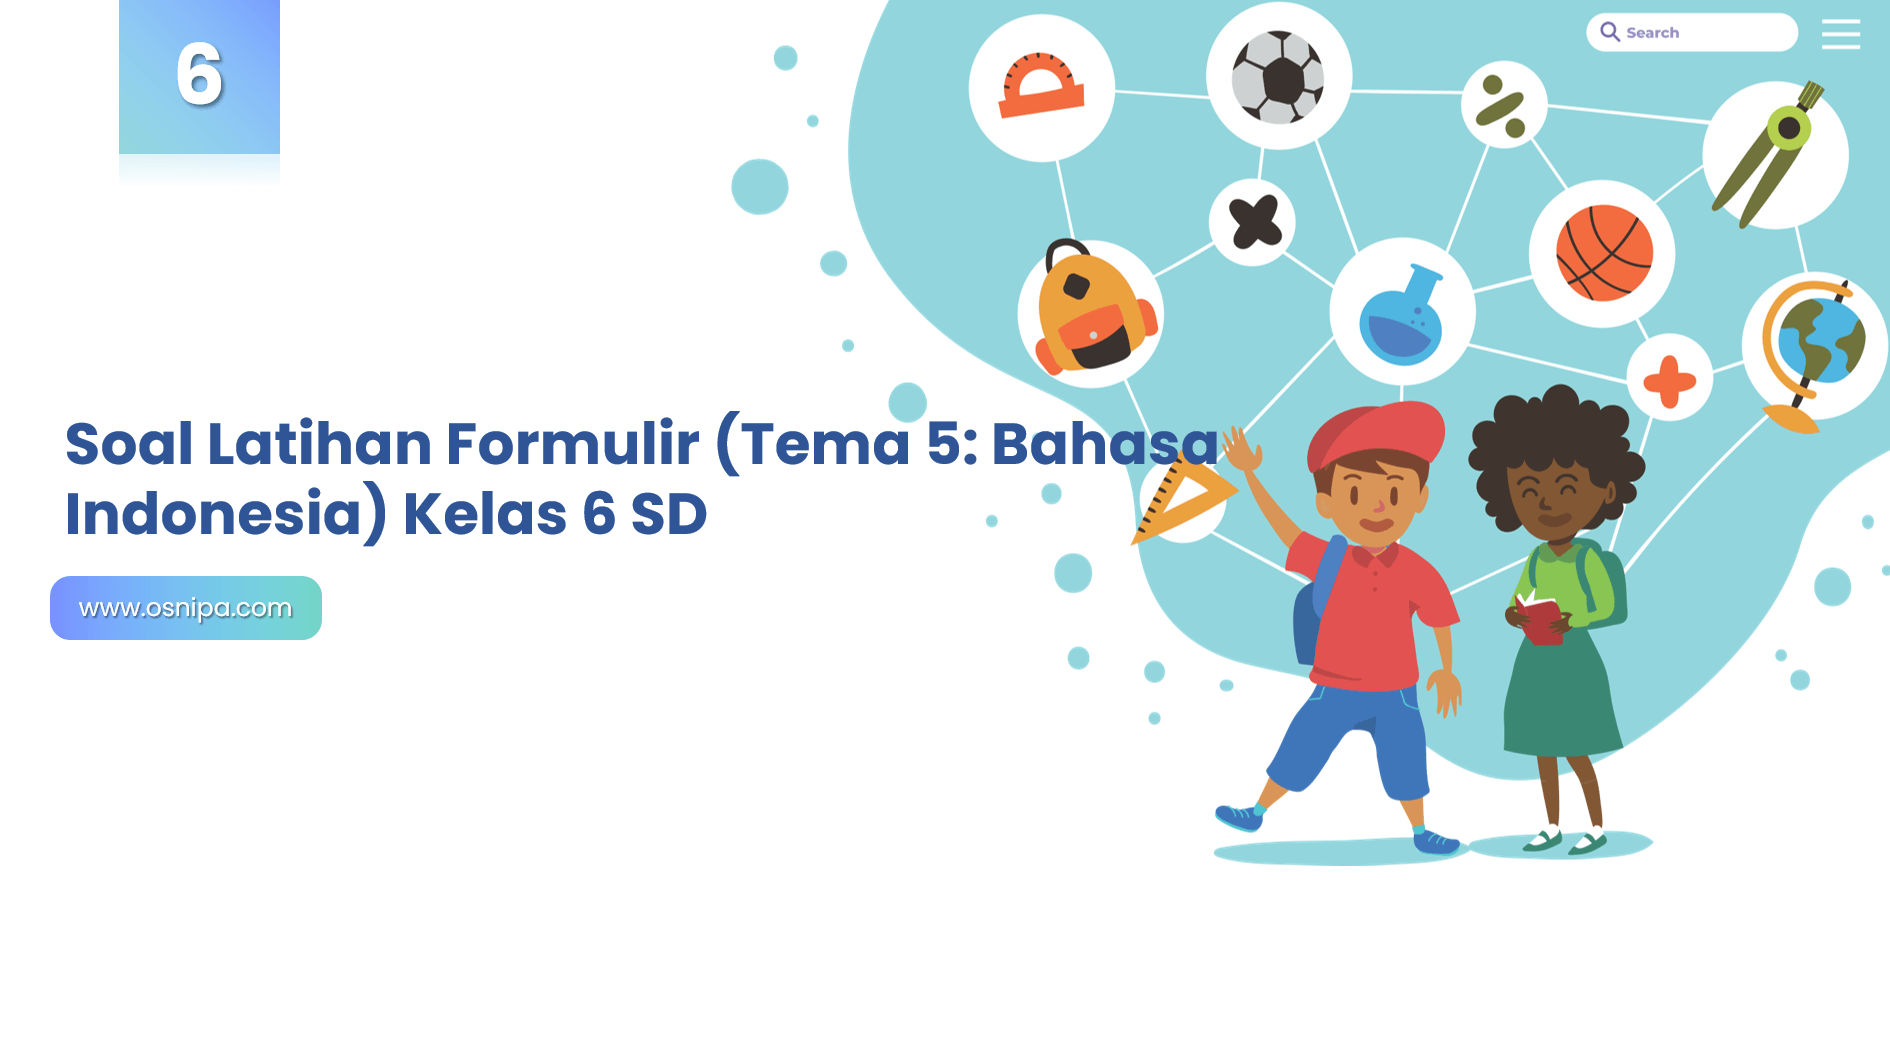 Soal Latihan Formulir (Tema 5: Bahasa Indonesia) Kelas 6 SD